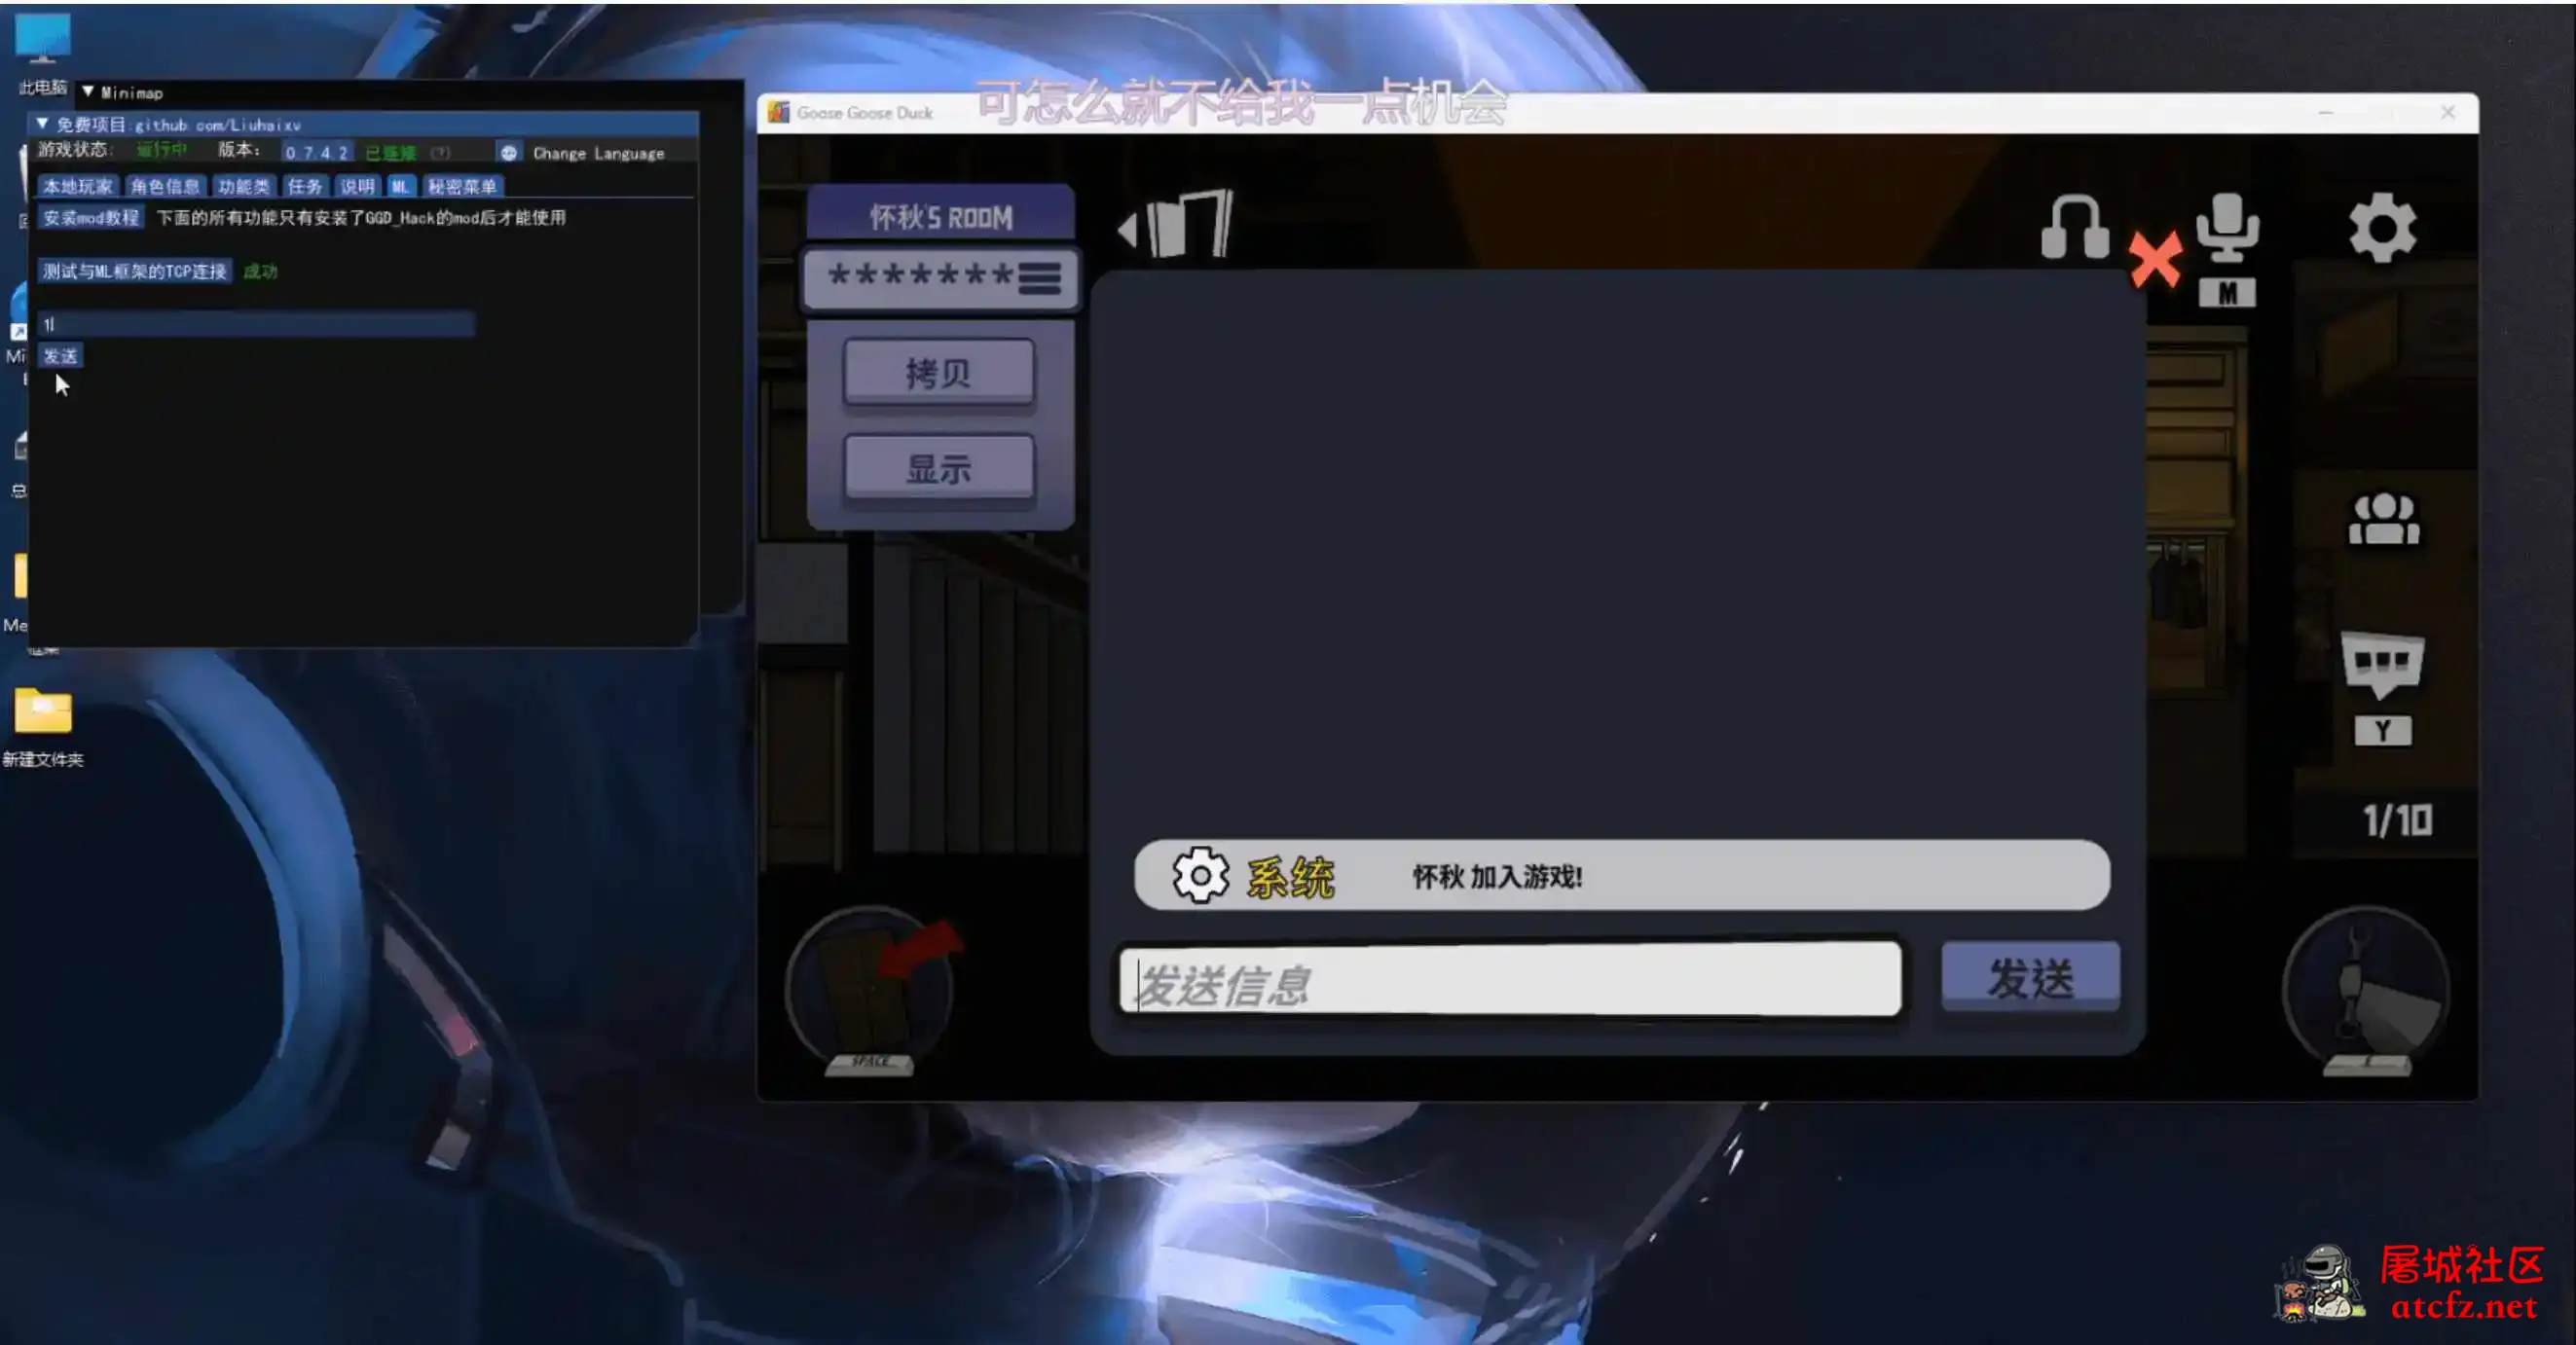 鹅鸭杀Minimp显玩家传送无冷却穿墙多功能辅助v1.5.1 屠城辅助网www.tcfz1.com7792